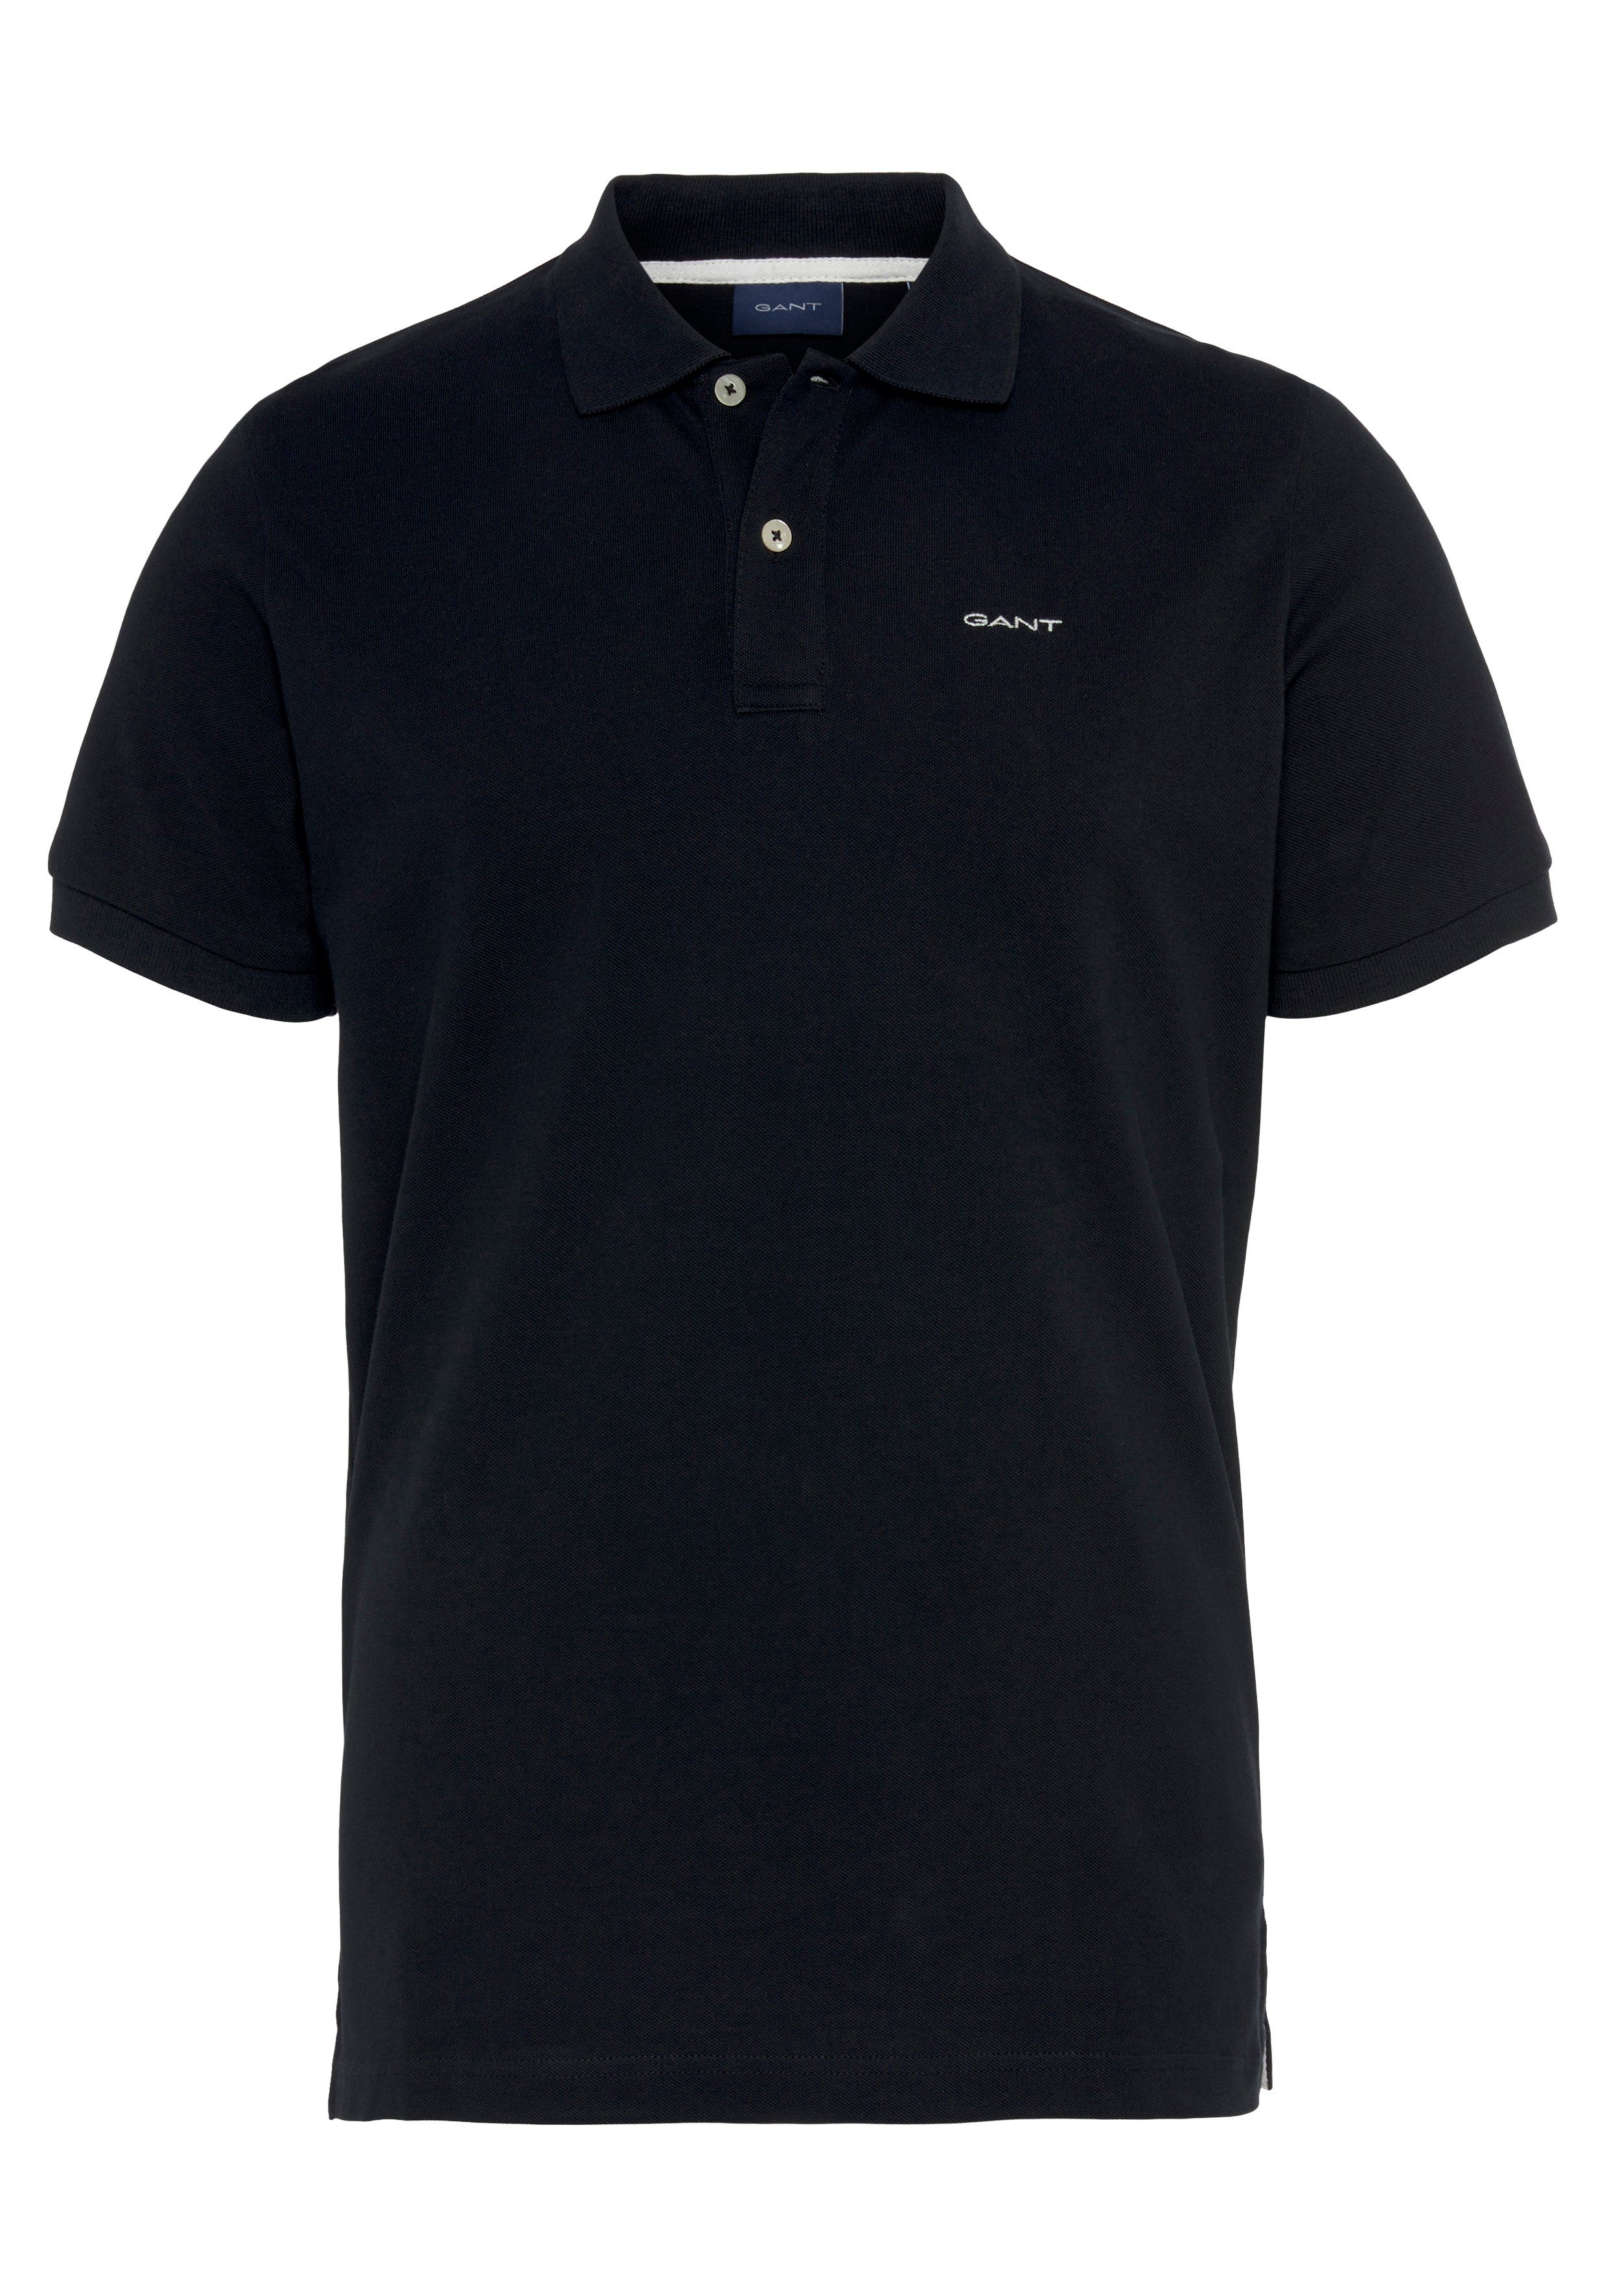 Premium KA RUGGER Fit, Casual, Smart Piqué-Polo Regular MD. schwarz Gant Qualität PIQUE Poloshirt Shirt,